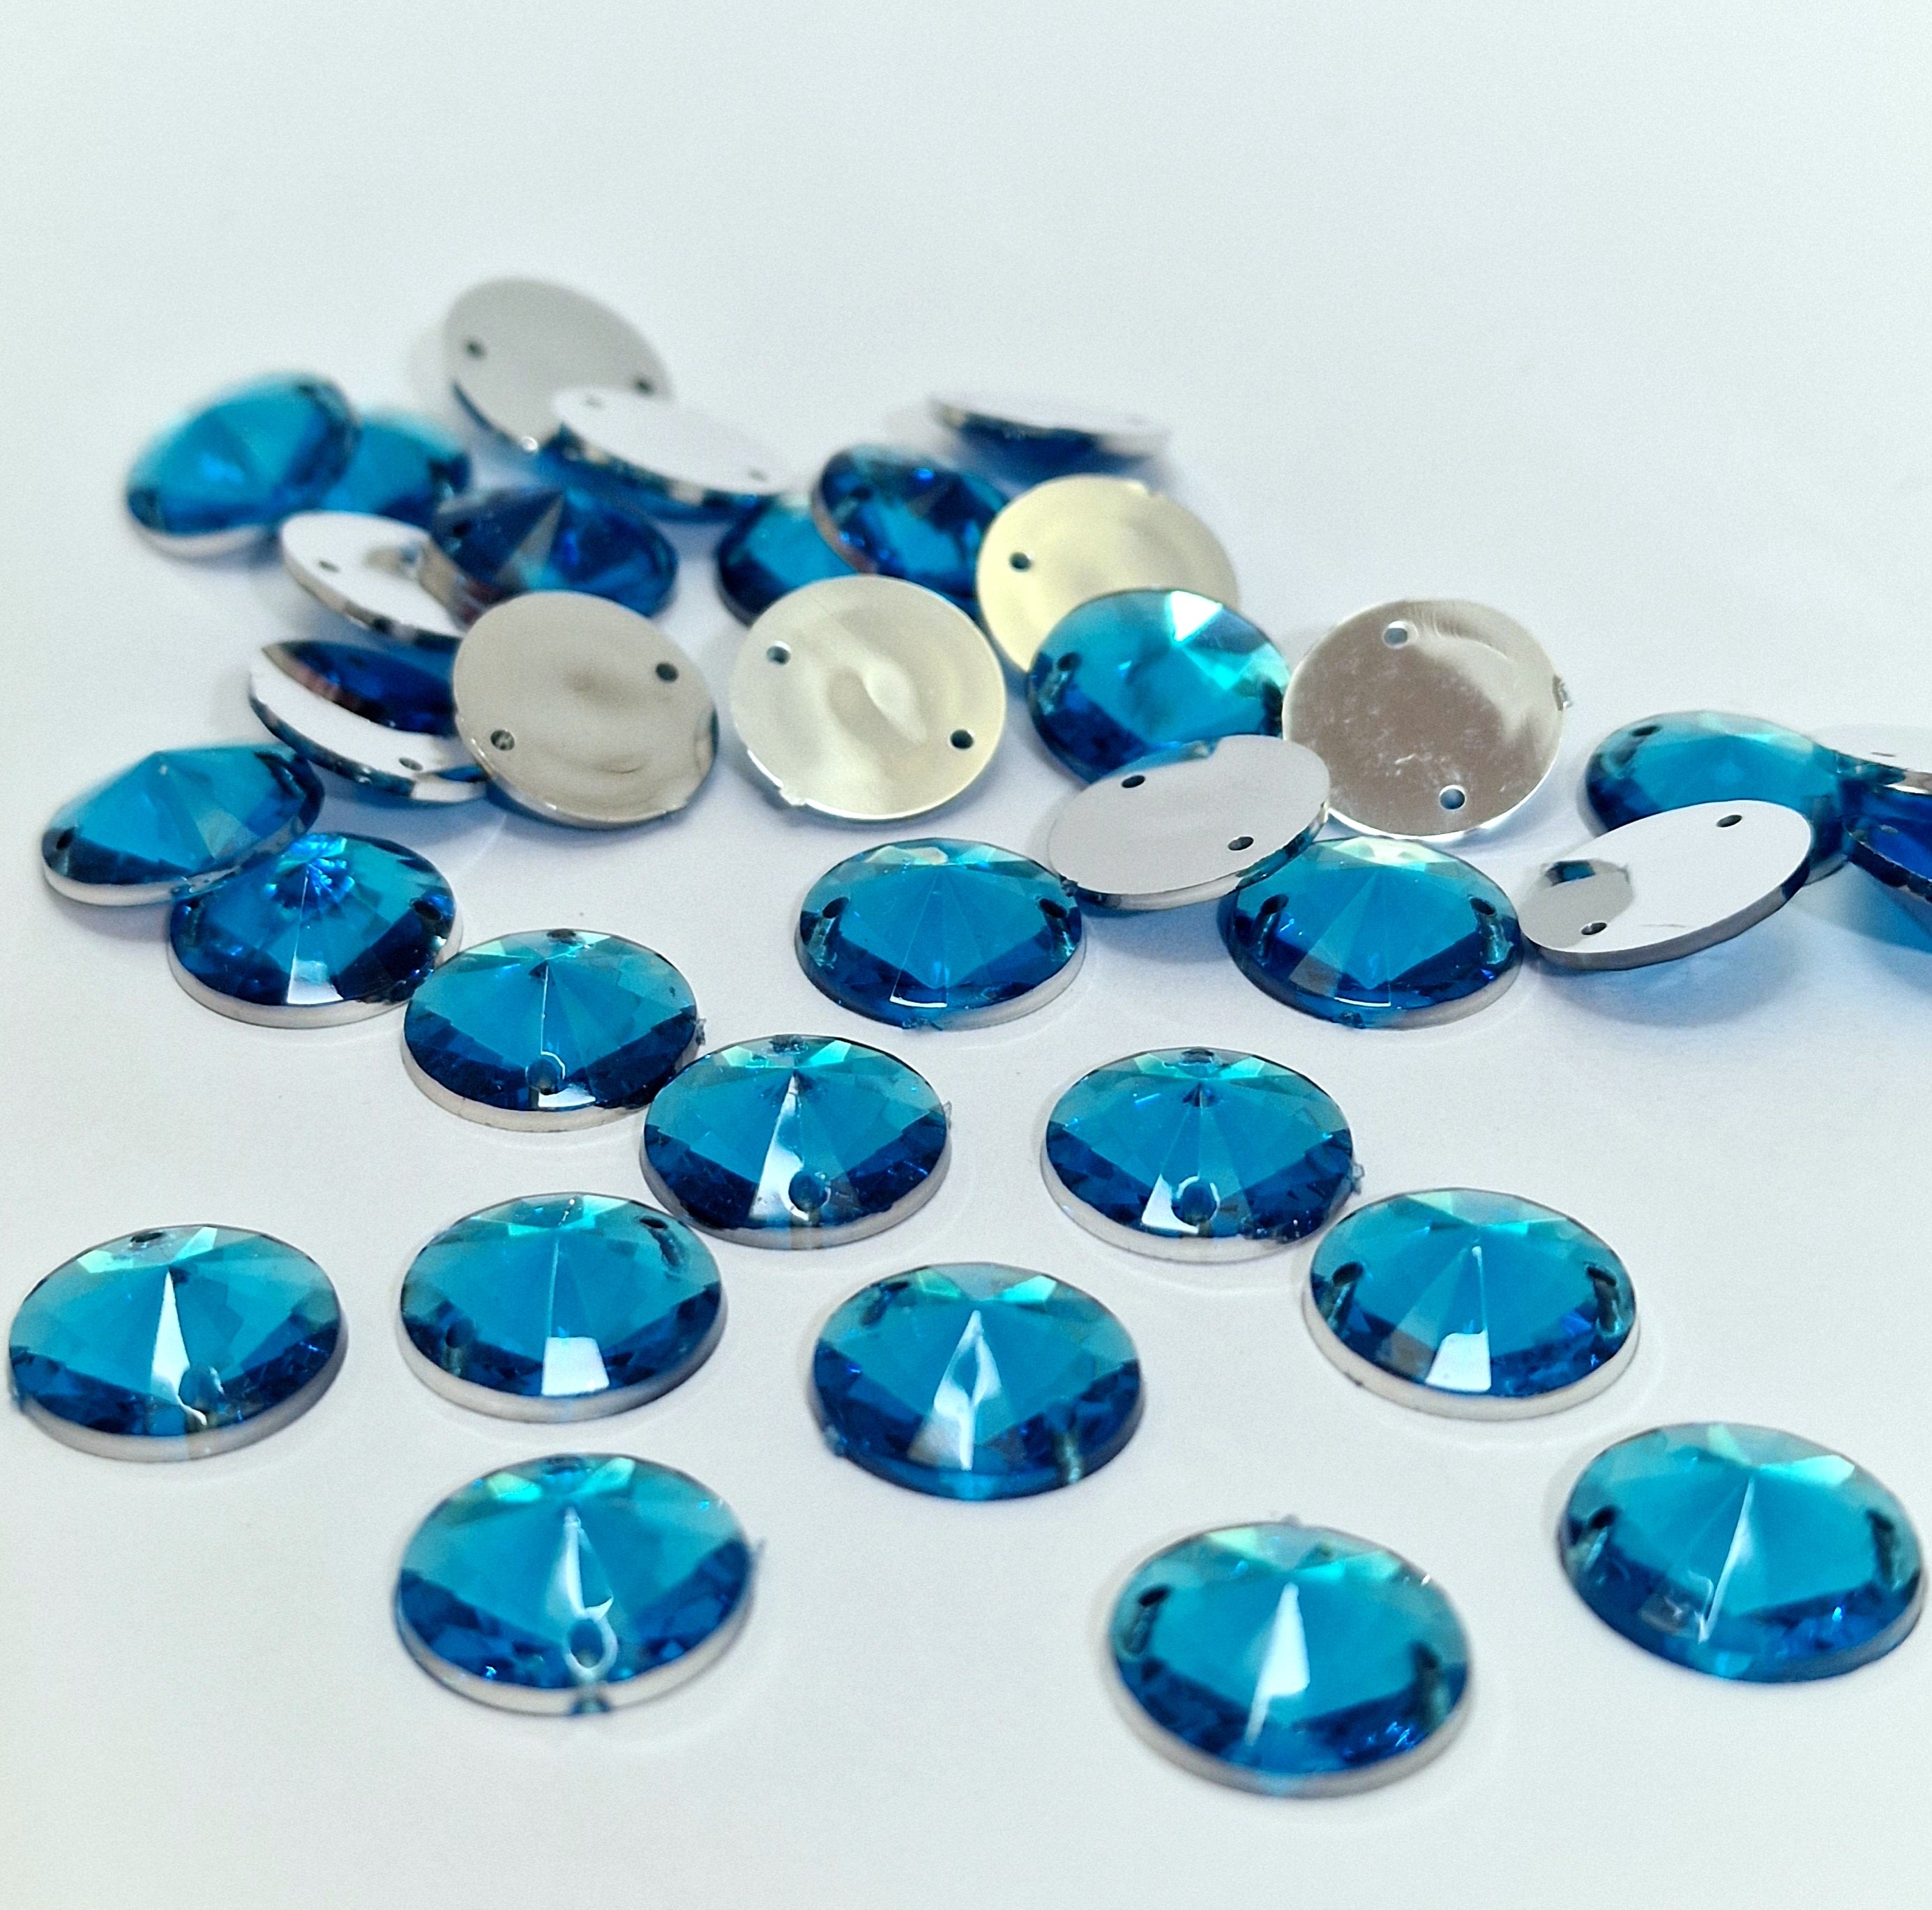 MajorCrafts 80pcs 12mm Royal Blue Round Acrylic Pointed Sewing Rhinestones